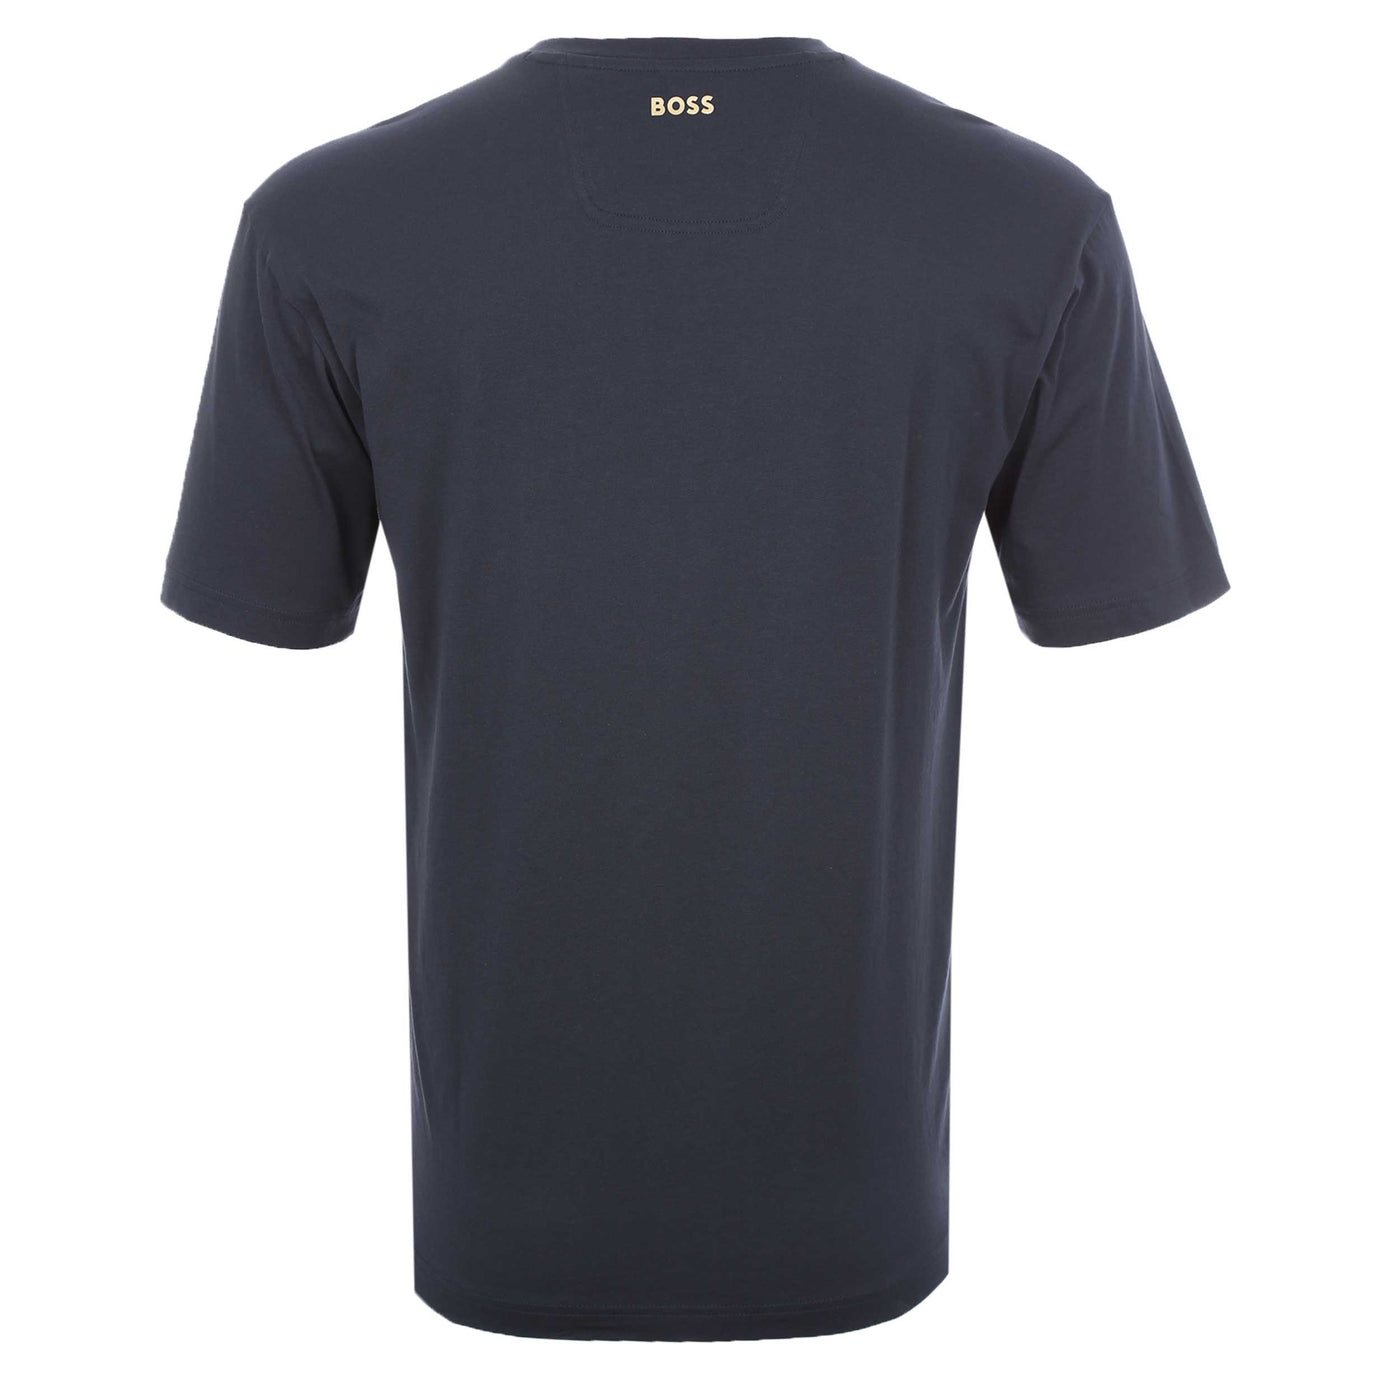 BOSS Tee 1 T-Shirt in Navy & Gold